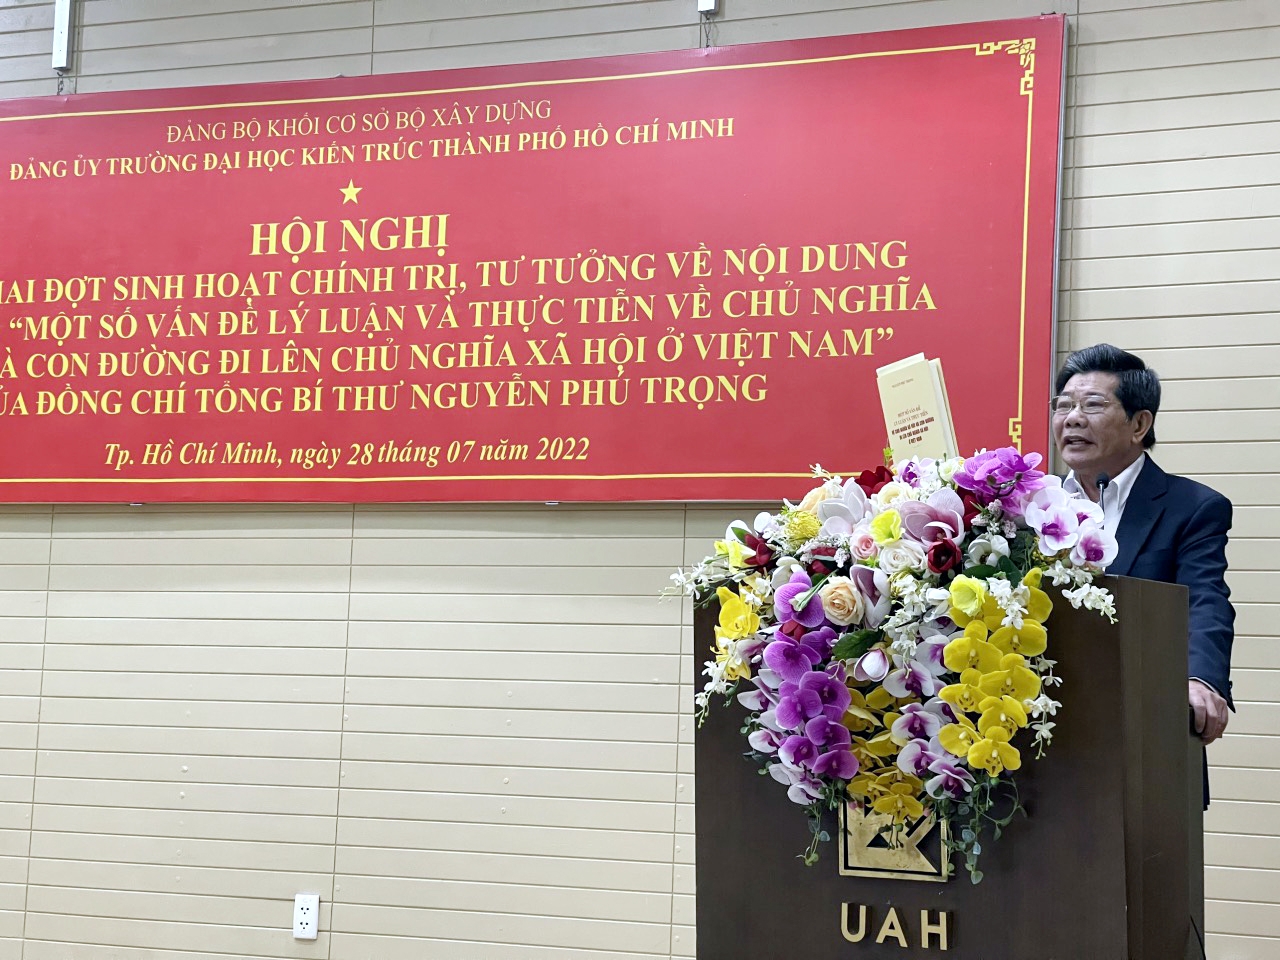 Nghiên cứu tác phẩm “Một số vấn đề lý luận và thực tiễn về CNXH và con đường đi lên CNXH ở Việt Nam” của Tổng Bí thư Nguyễn Phú Trọng